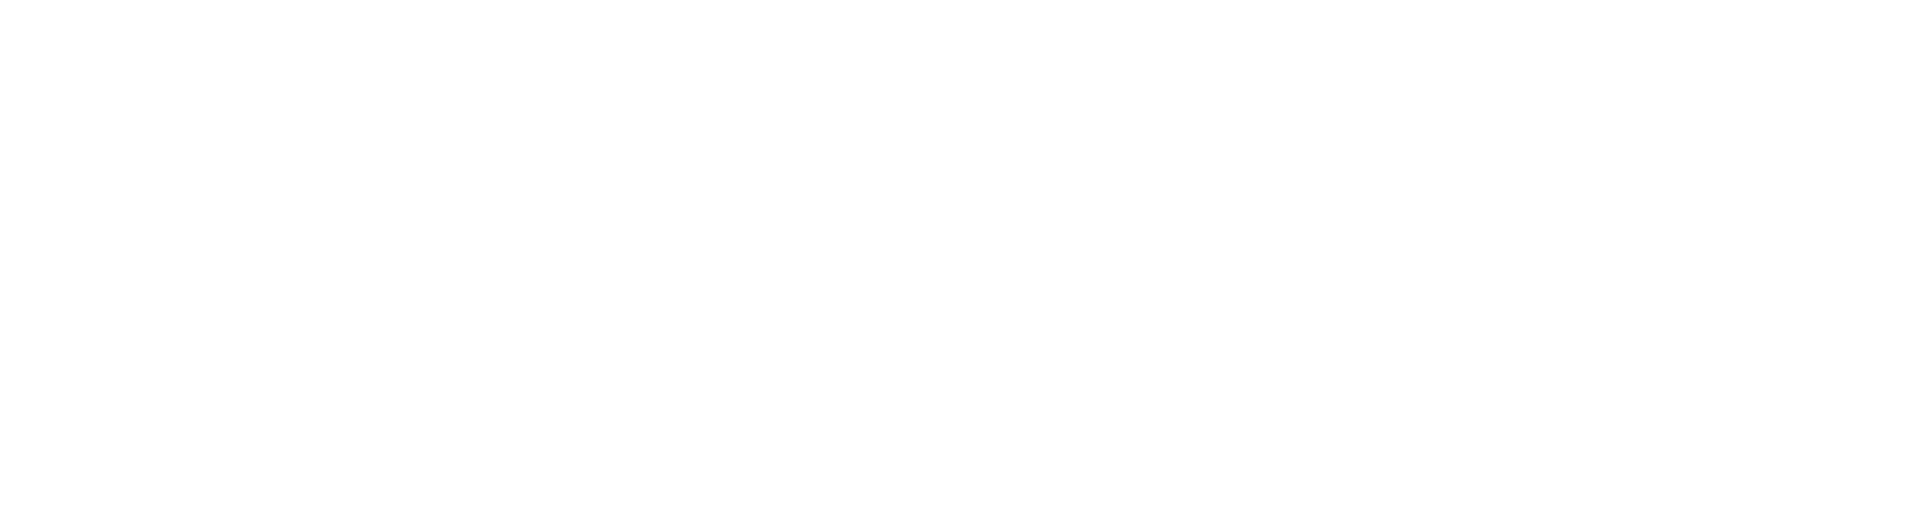 United Methodist Church logo